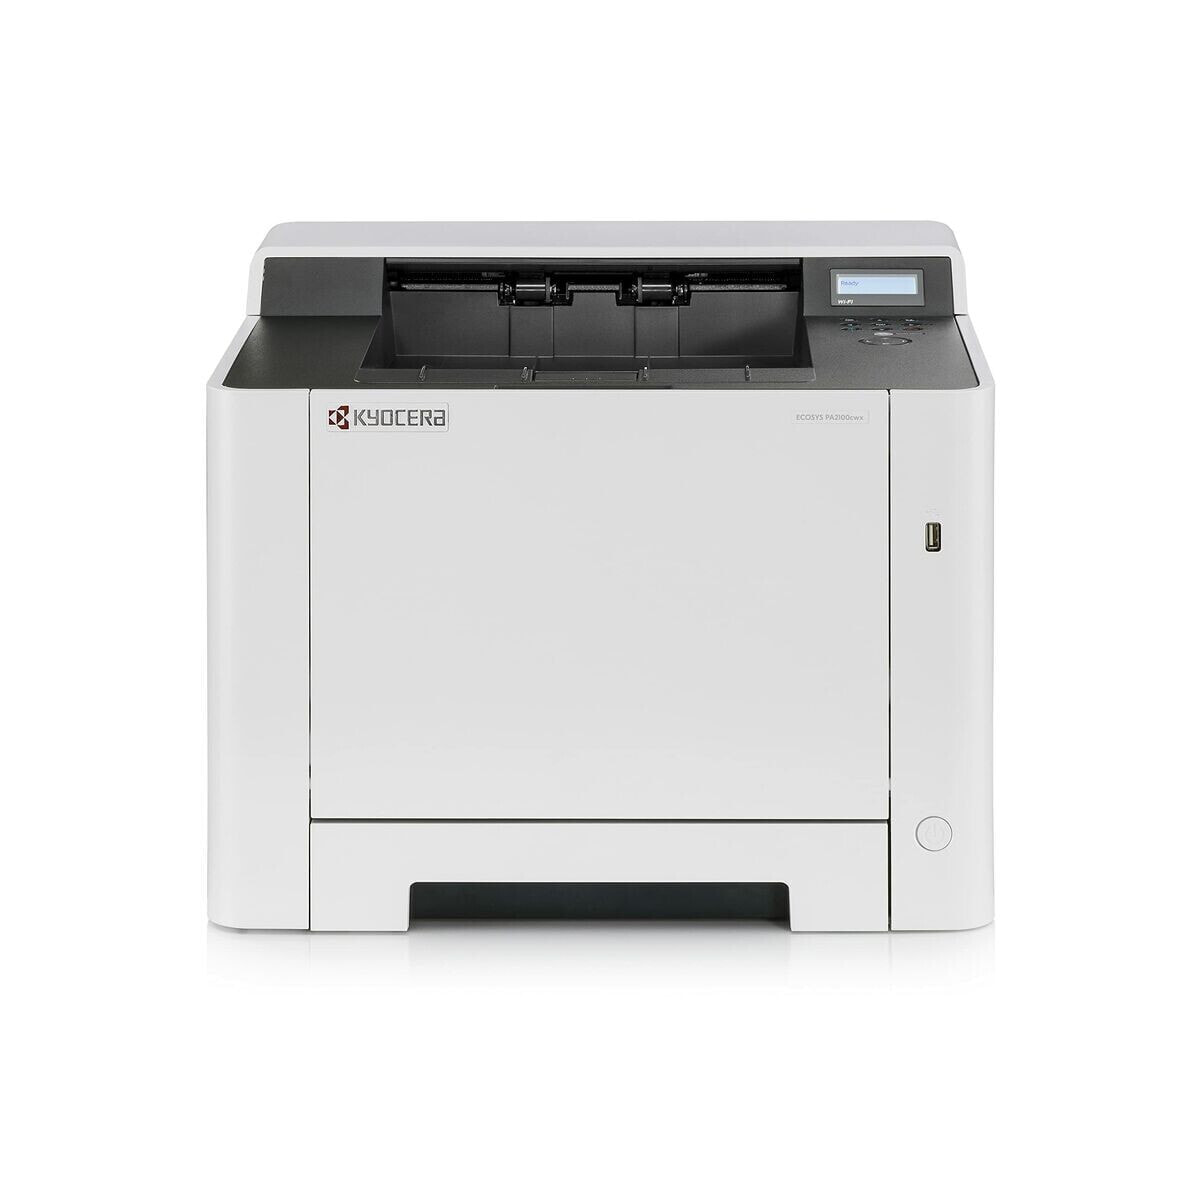 Лазерный принтер Kyocera 110C093NL0